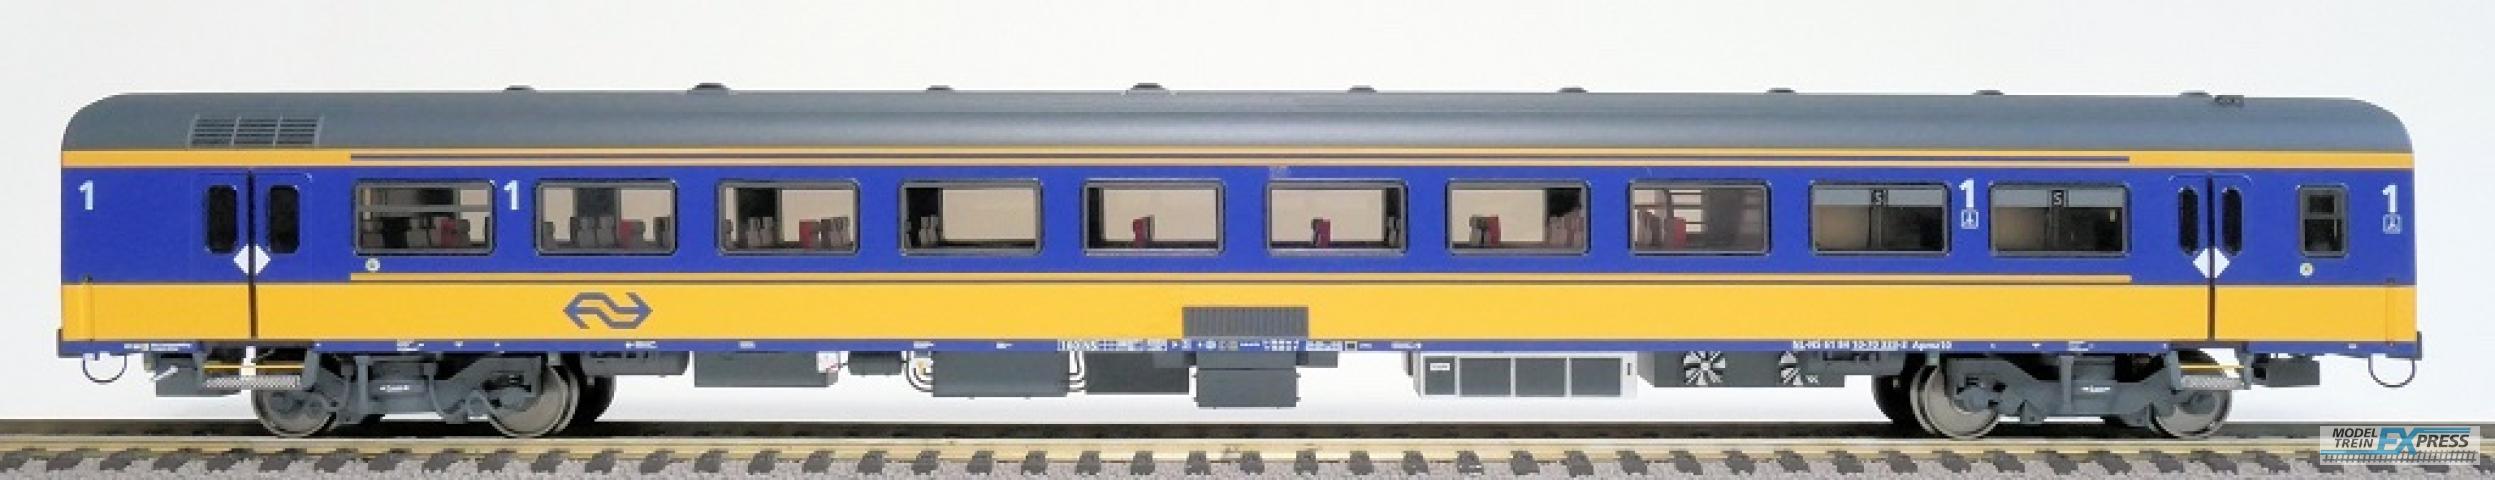 Exact-train 11015 NS ICRm Amsterdam - Breda für den Inlandseinsatz Reisezugwagen Apmz10 ( Farbe Gelb / Blau), Ep. VI